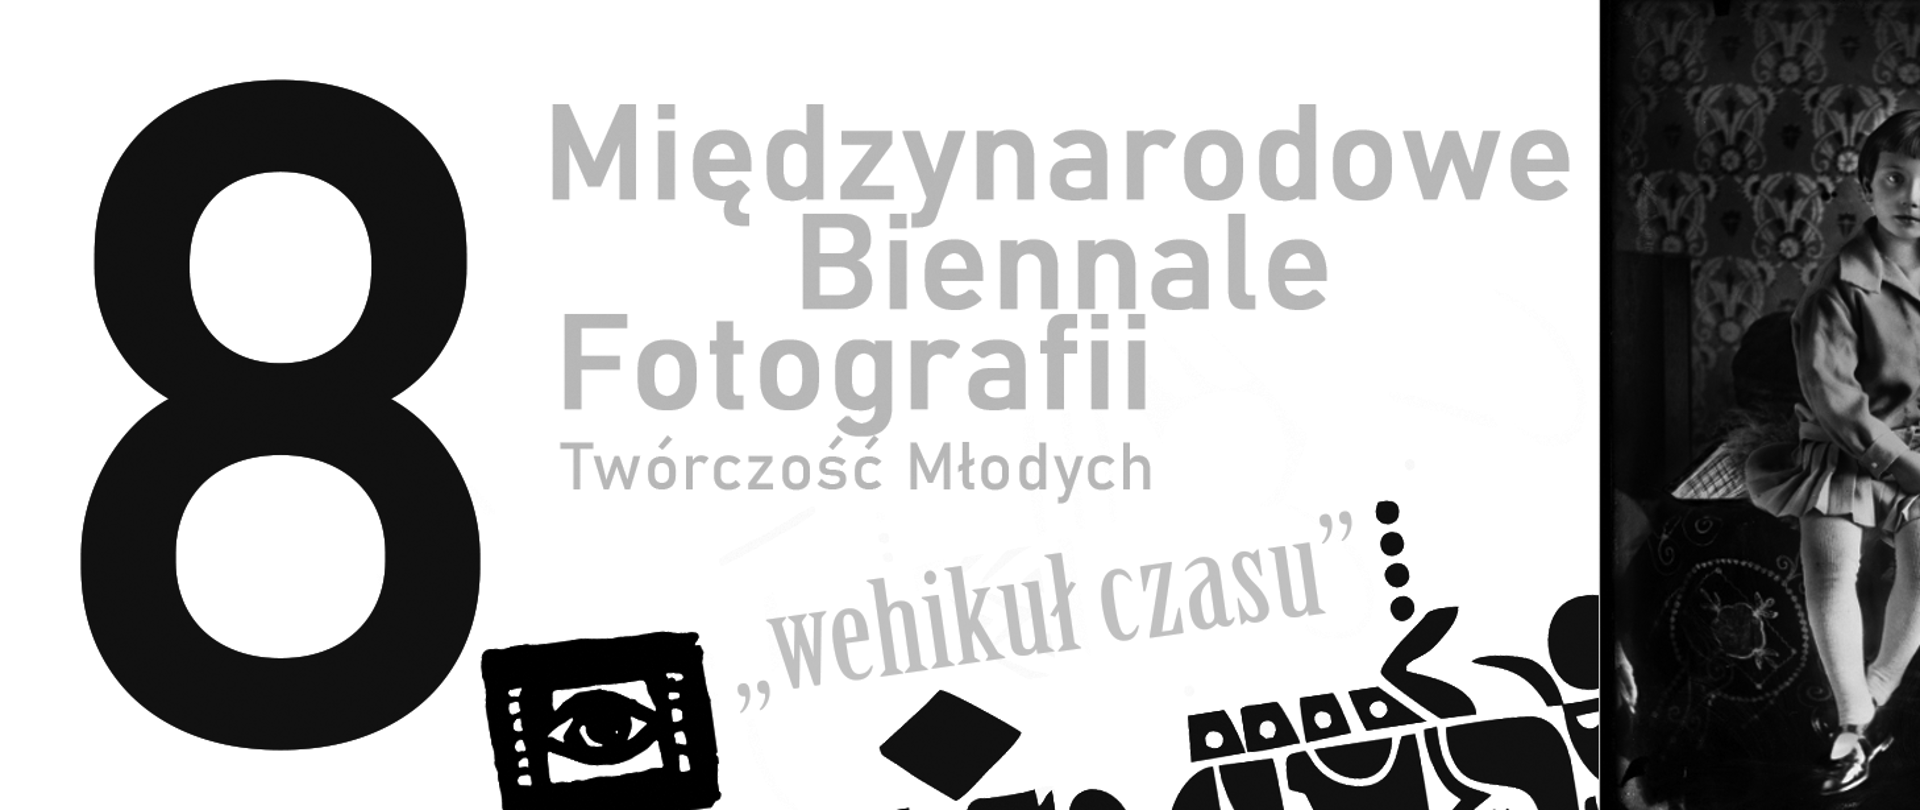 Baner w czarno-biały z napisem 8 Międzynarodowe Biennale Fotografii Szkół Plastycznych - Wehikuł czasu